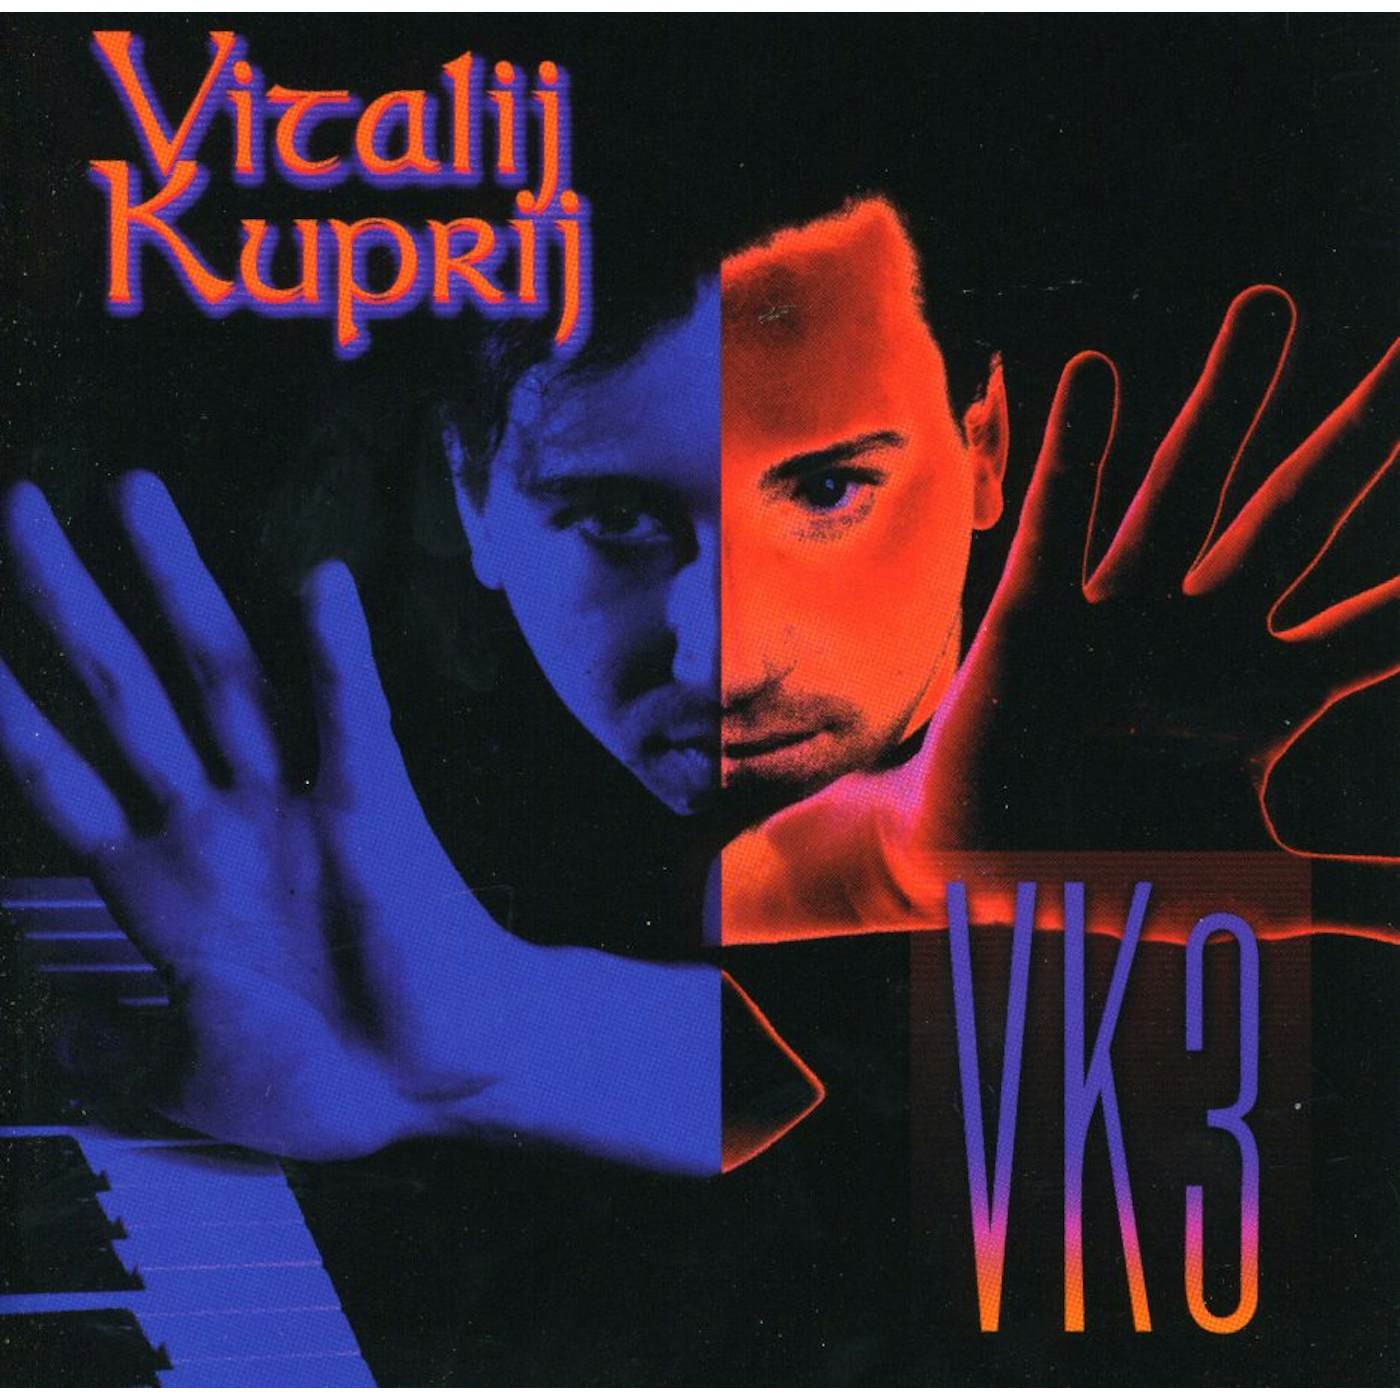 Vitalij Kuprij VK3 CD